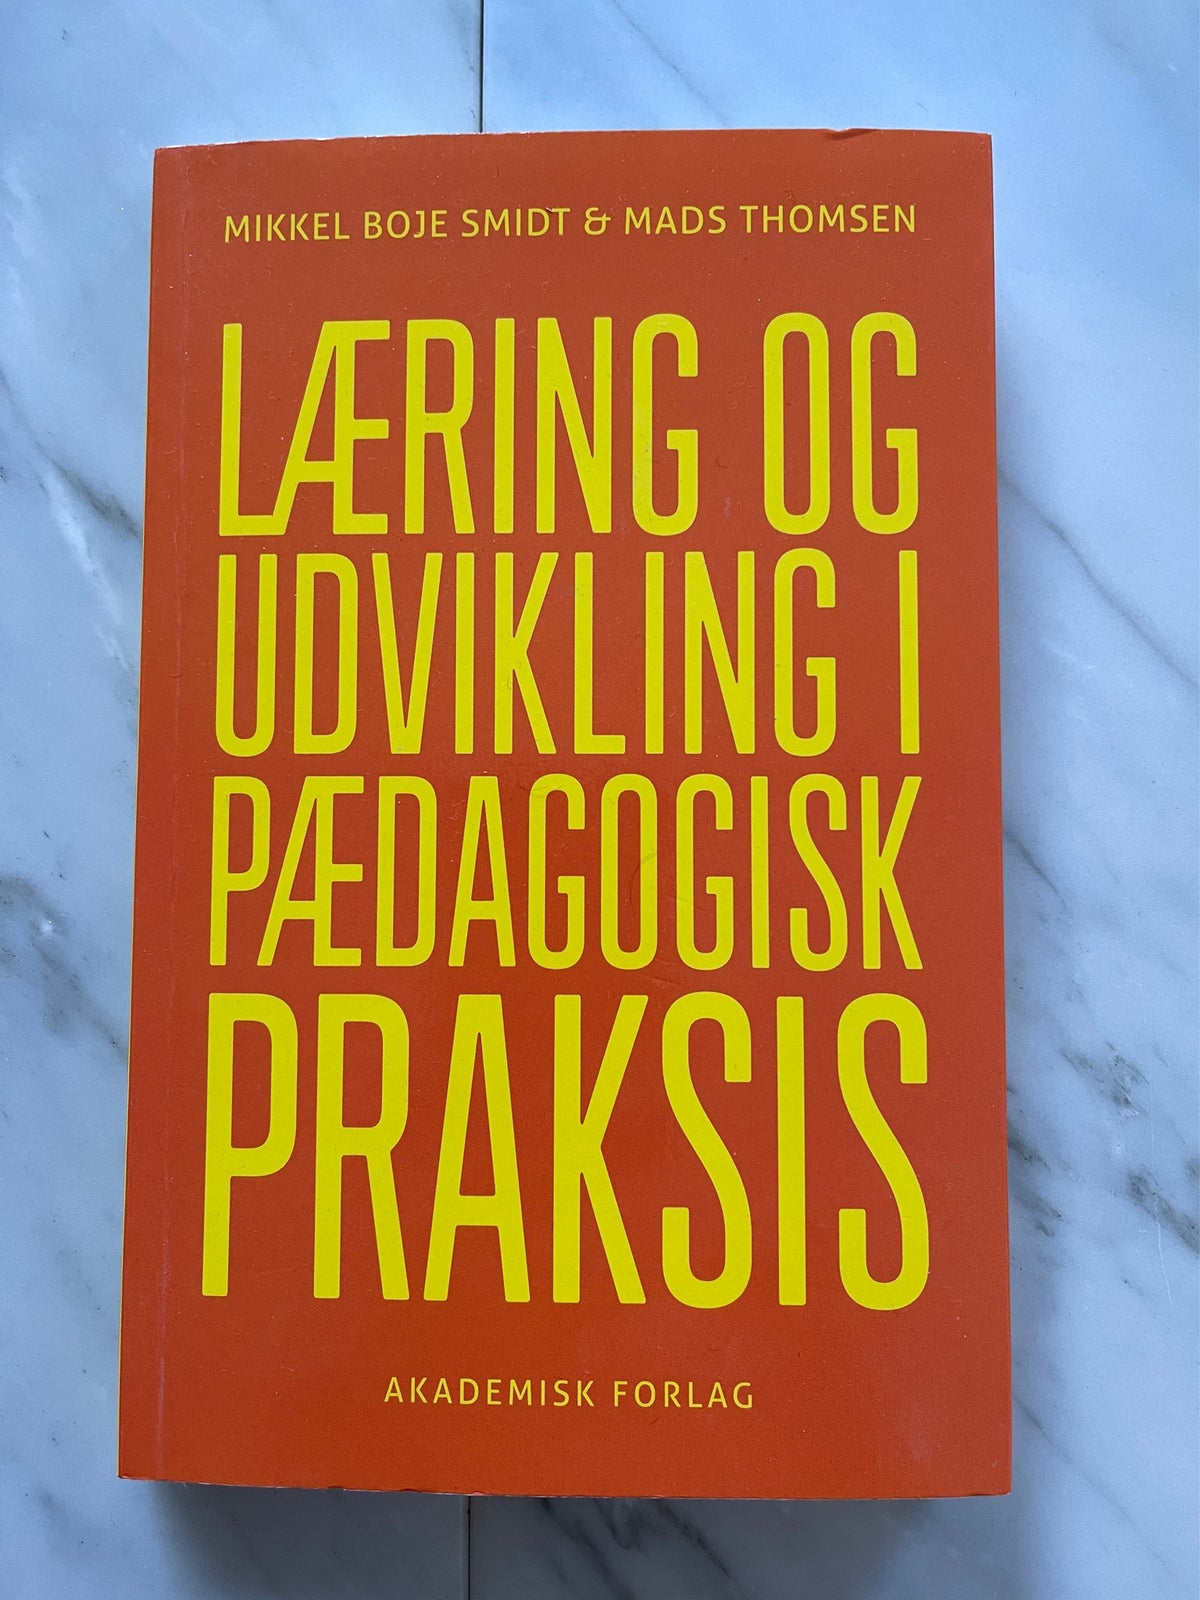 Læring og Udvikling i Pædagogisk Praksis, Mikkel Boe